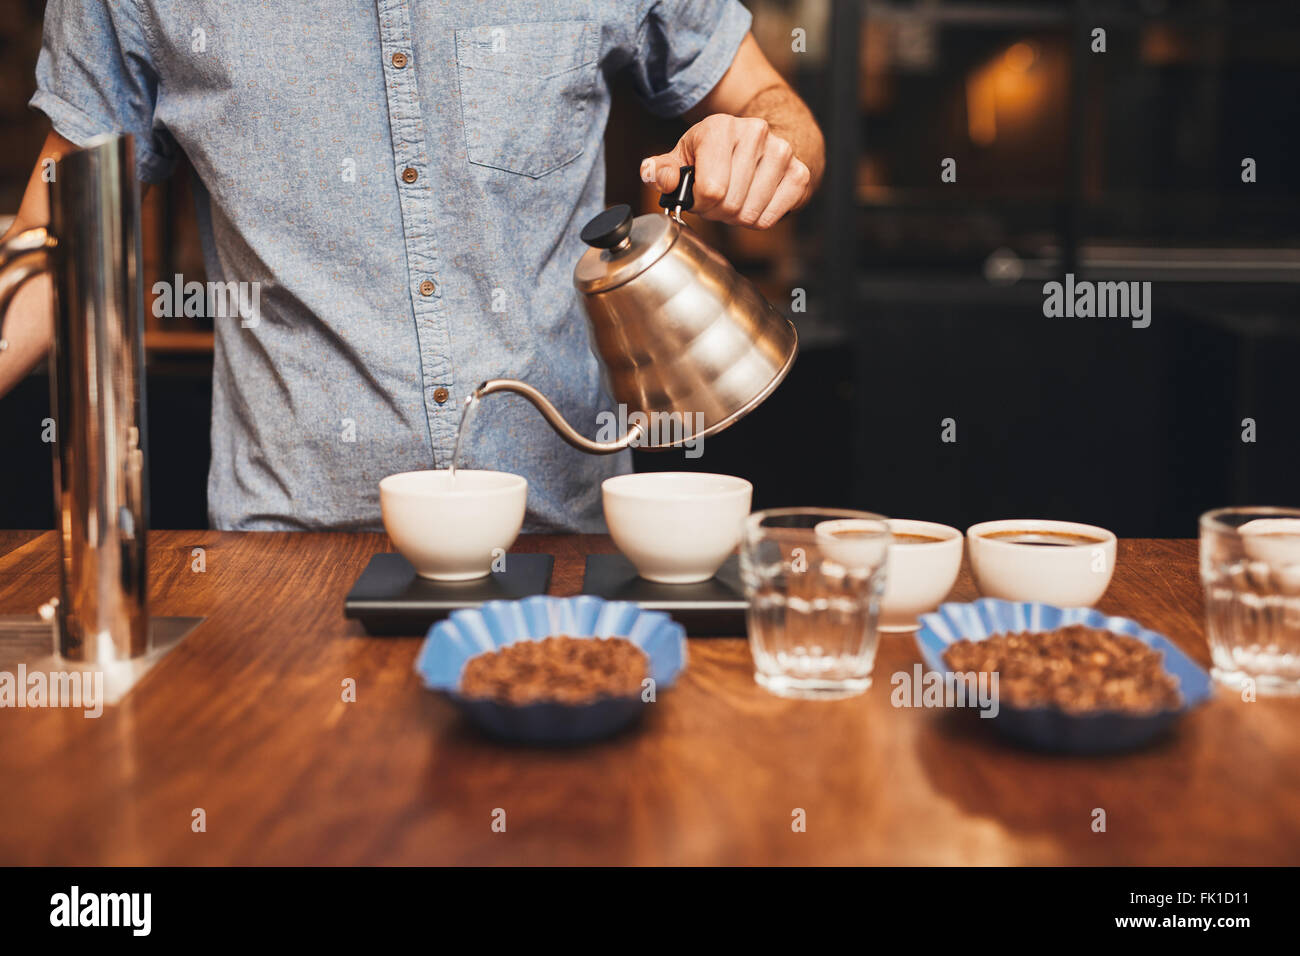 Homme verser de l'eau dans une tasse à café sur une échelle numérique Banque D'Images